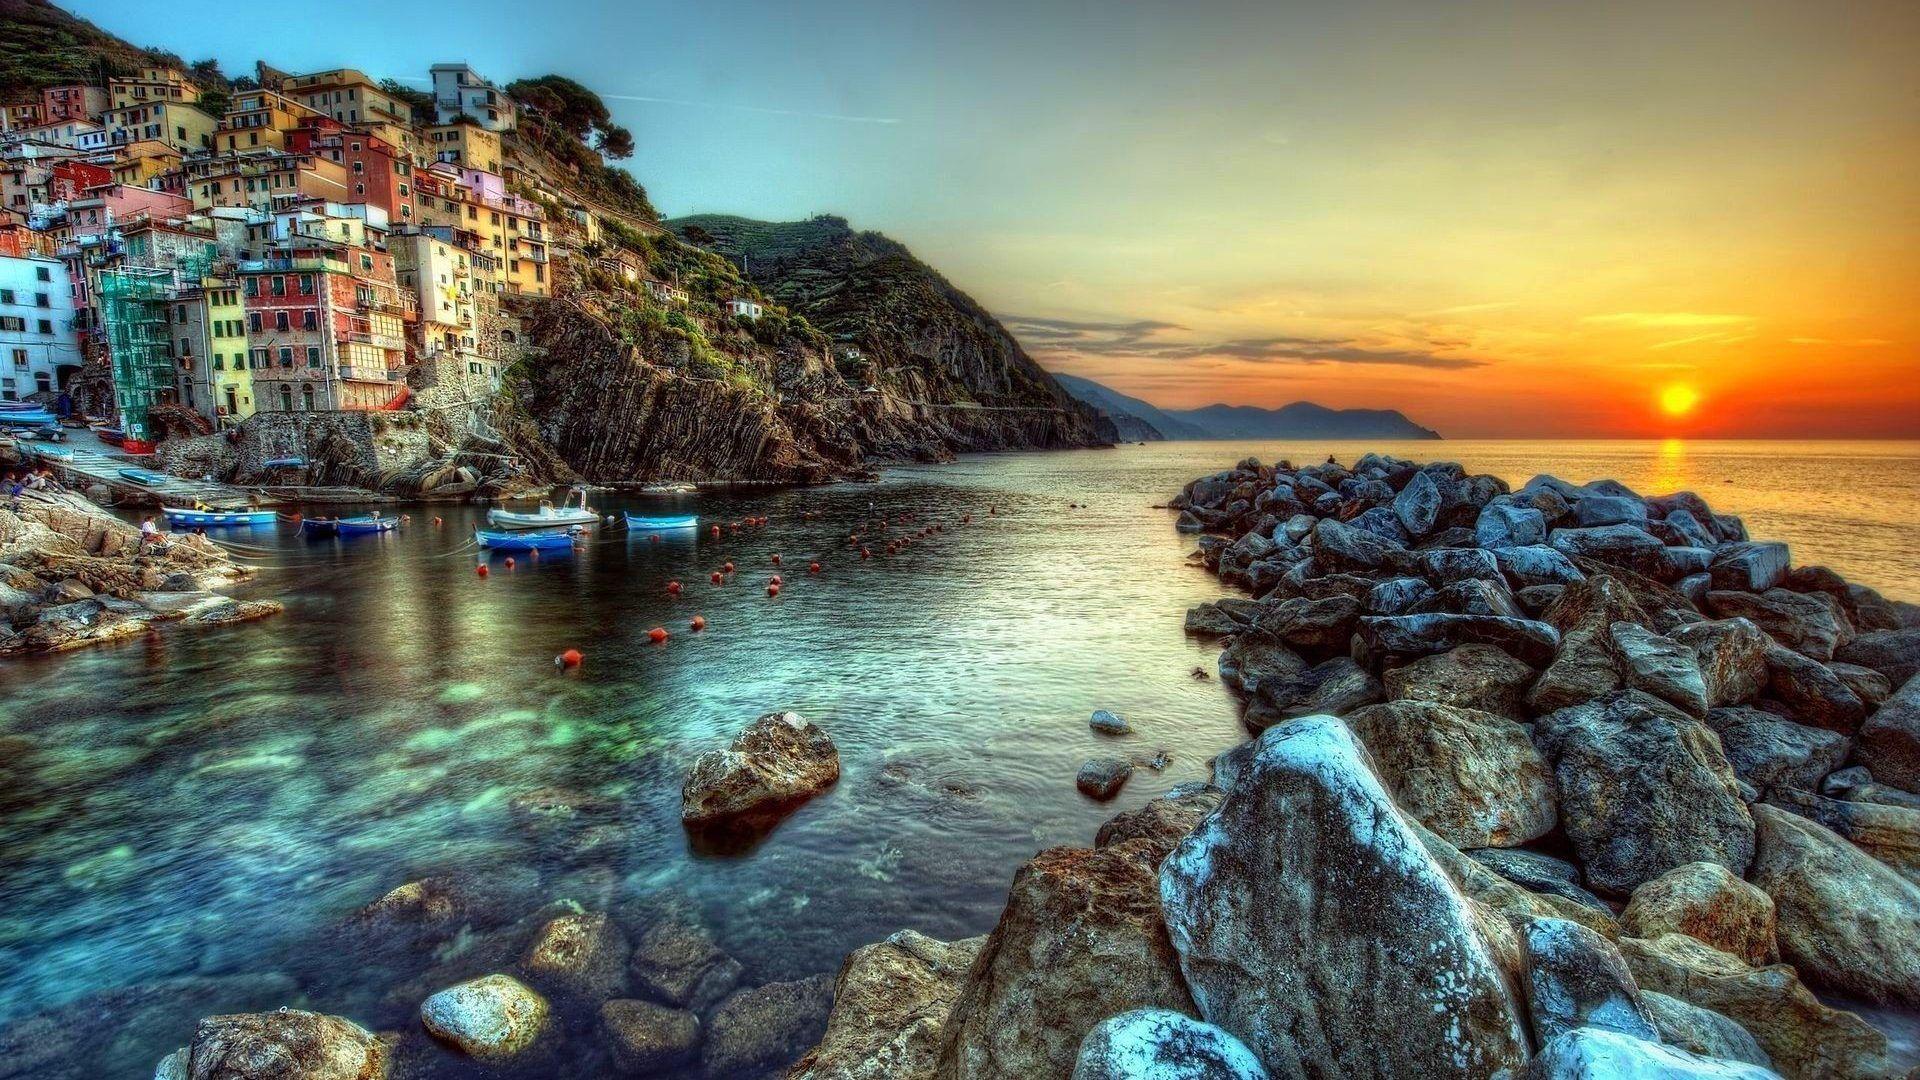 Sunset: Amalfi Coast Houses Cliffs Rocks Italy Sun Sea Sunset